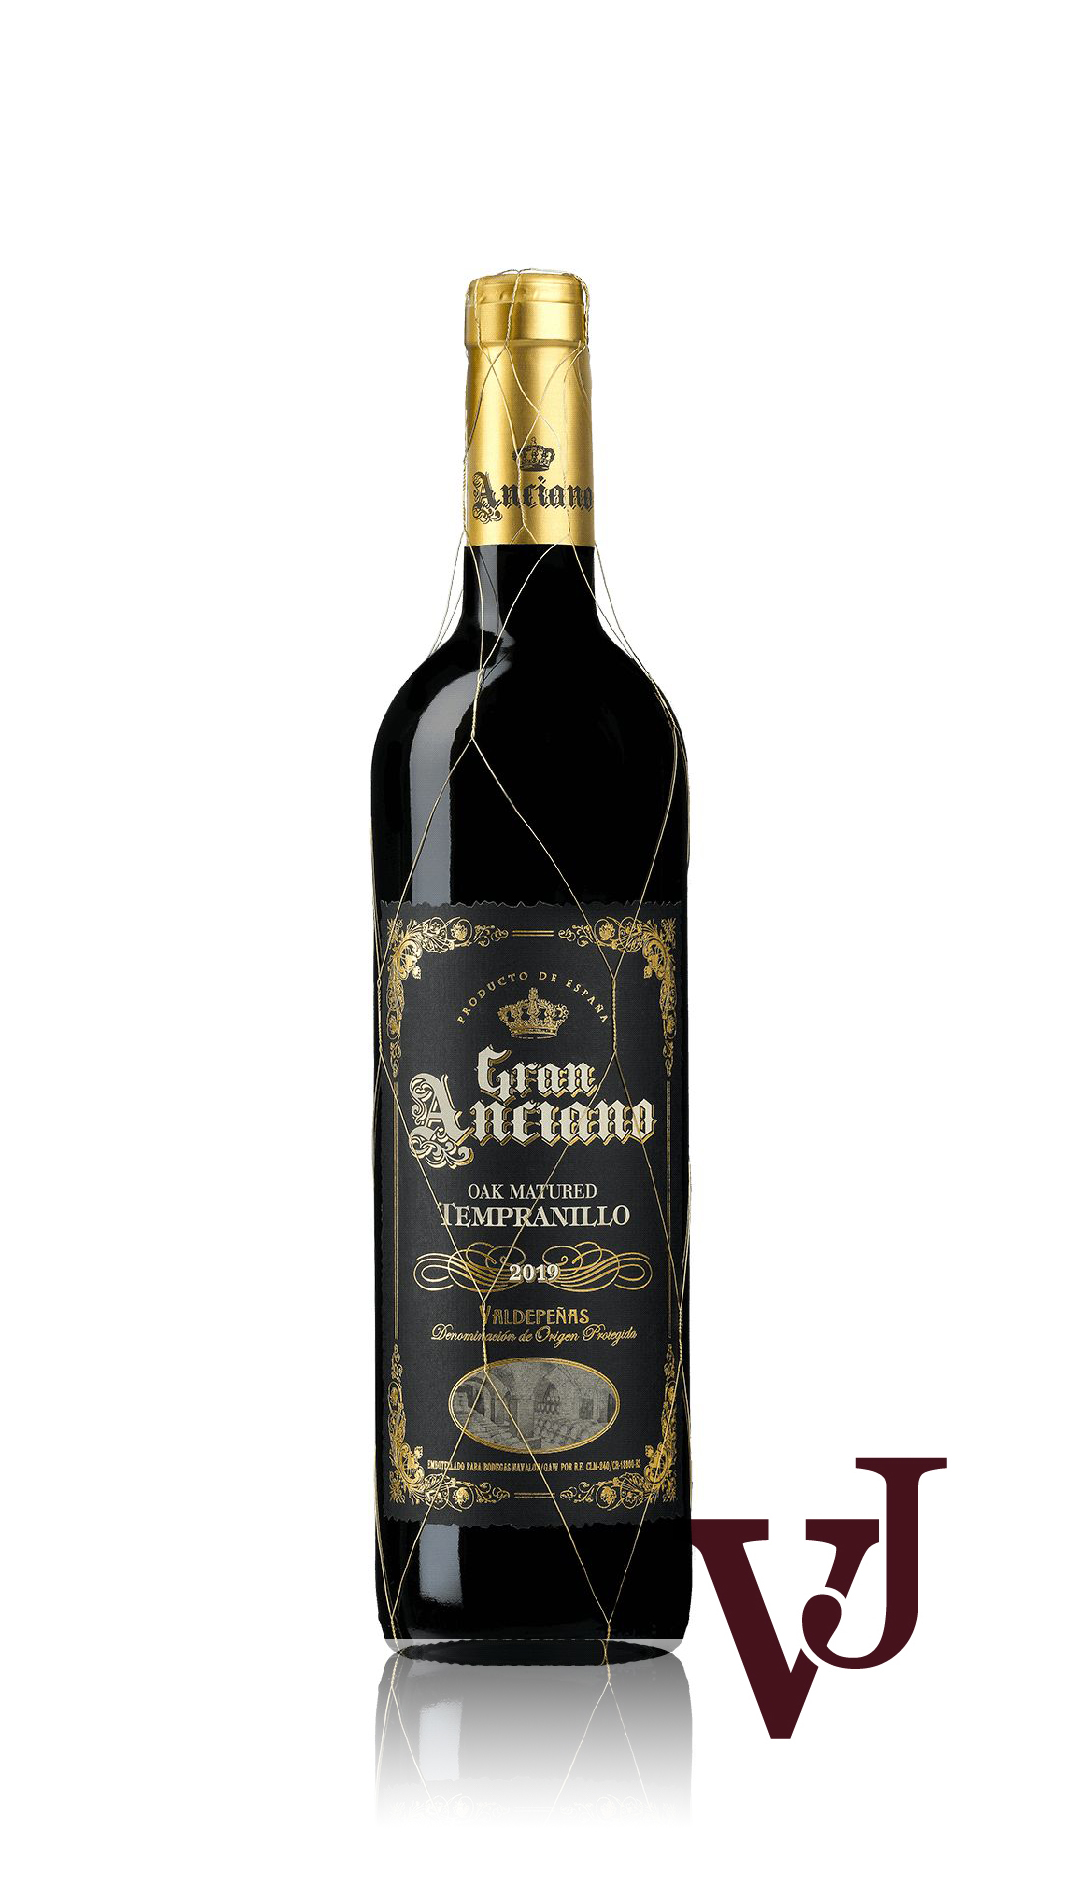 Rött Vin - Gran Anciano artikel nummer 468601 från producenten Bodegas Navalon från området Spanien